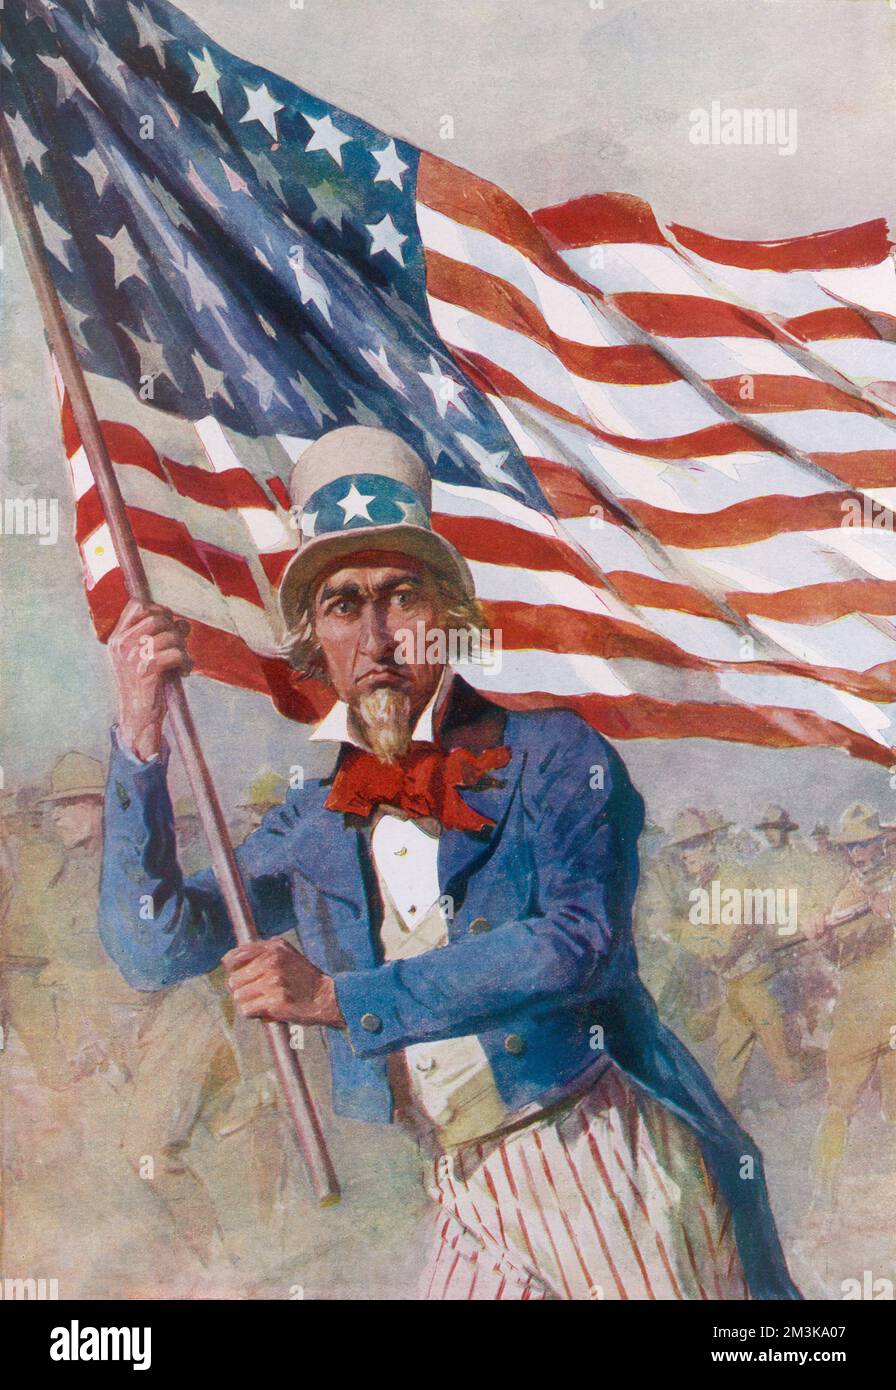 Zio Sam, simbolo degli Stati Uniti d'America, sventola la bandiera Stars & Stripes e rappresenta il contributo degli americani alle truppe della prima guerra mondiale. Data: 1919 Foto Stock